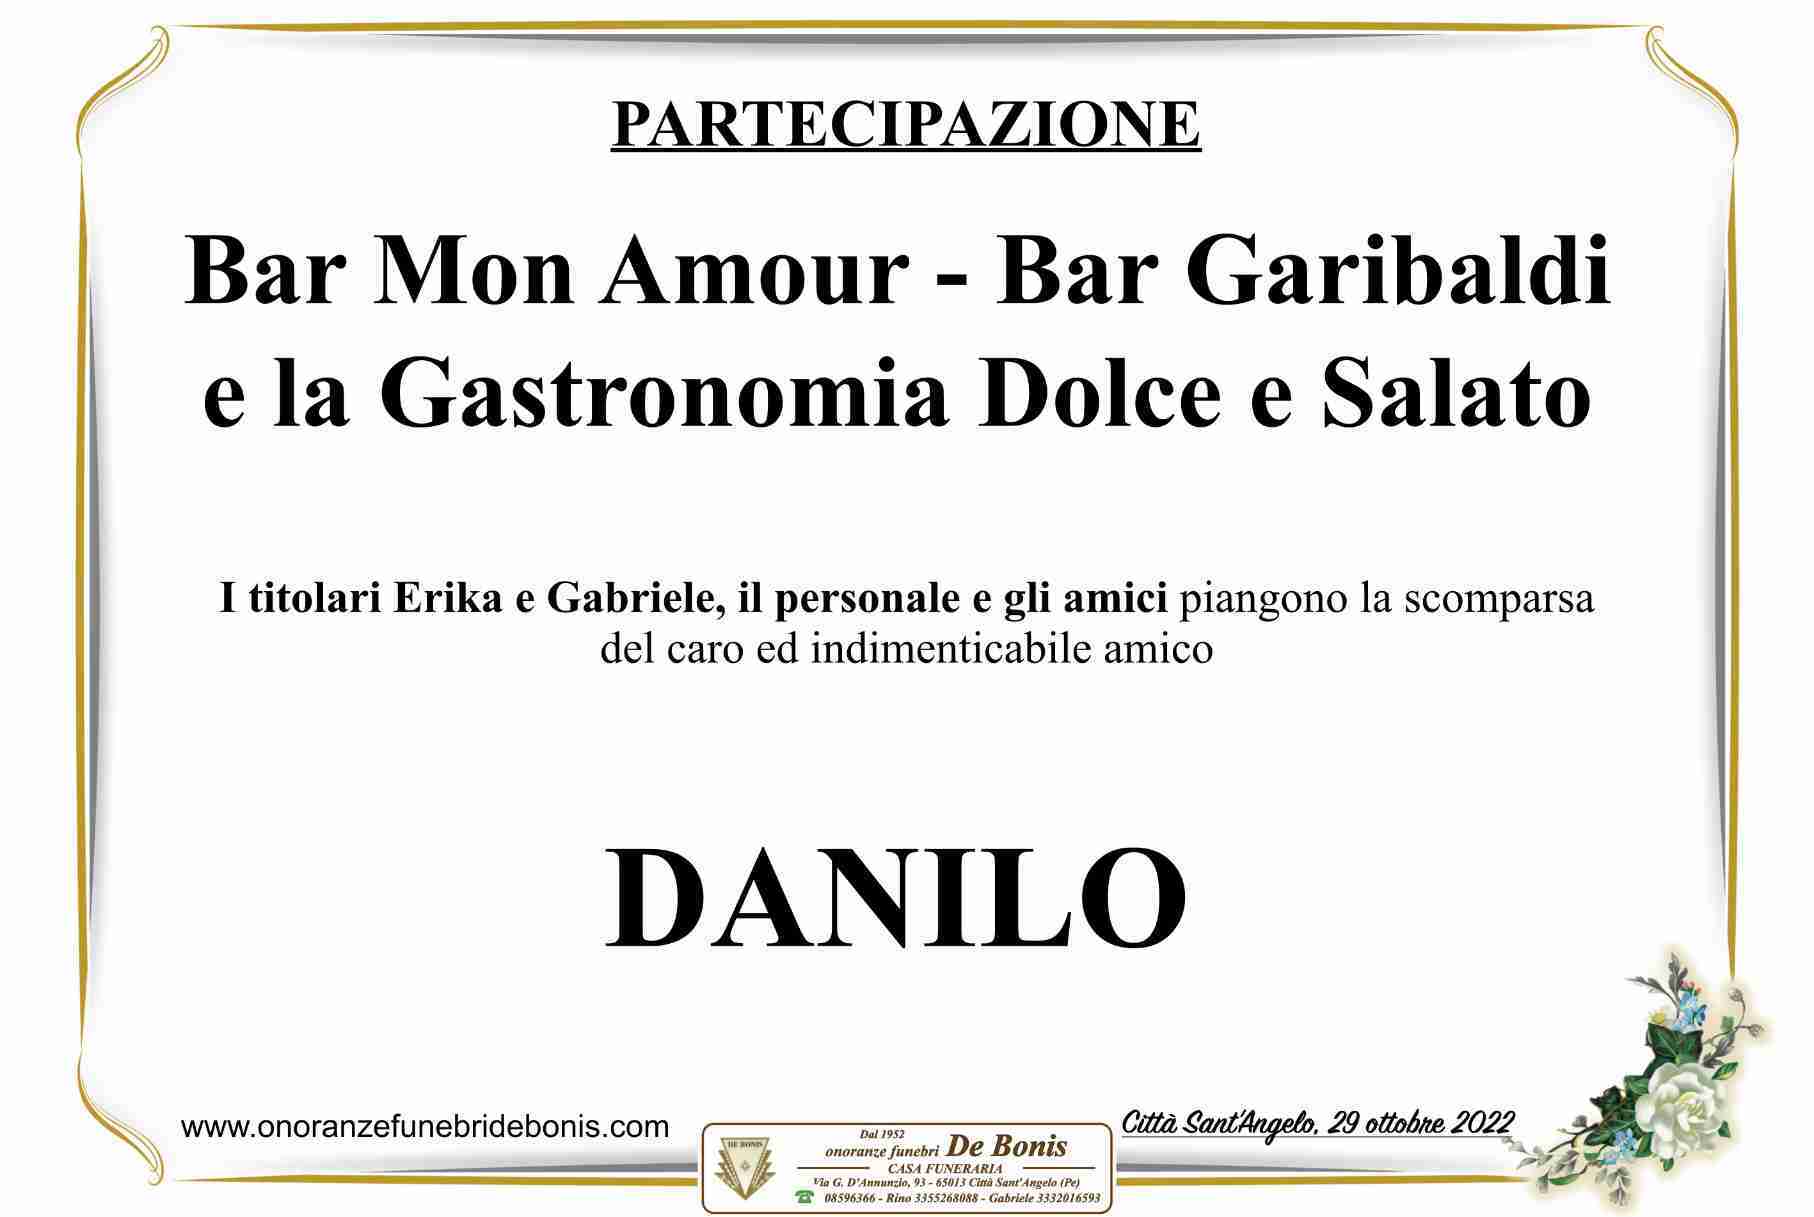 Danilo Delli Passeri